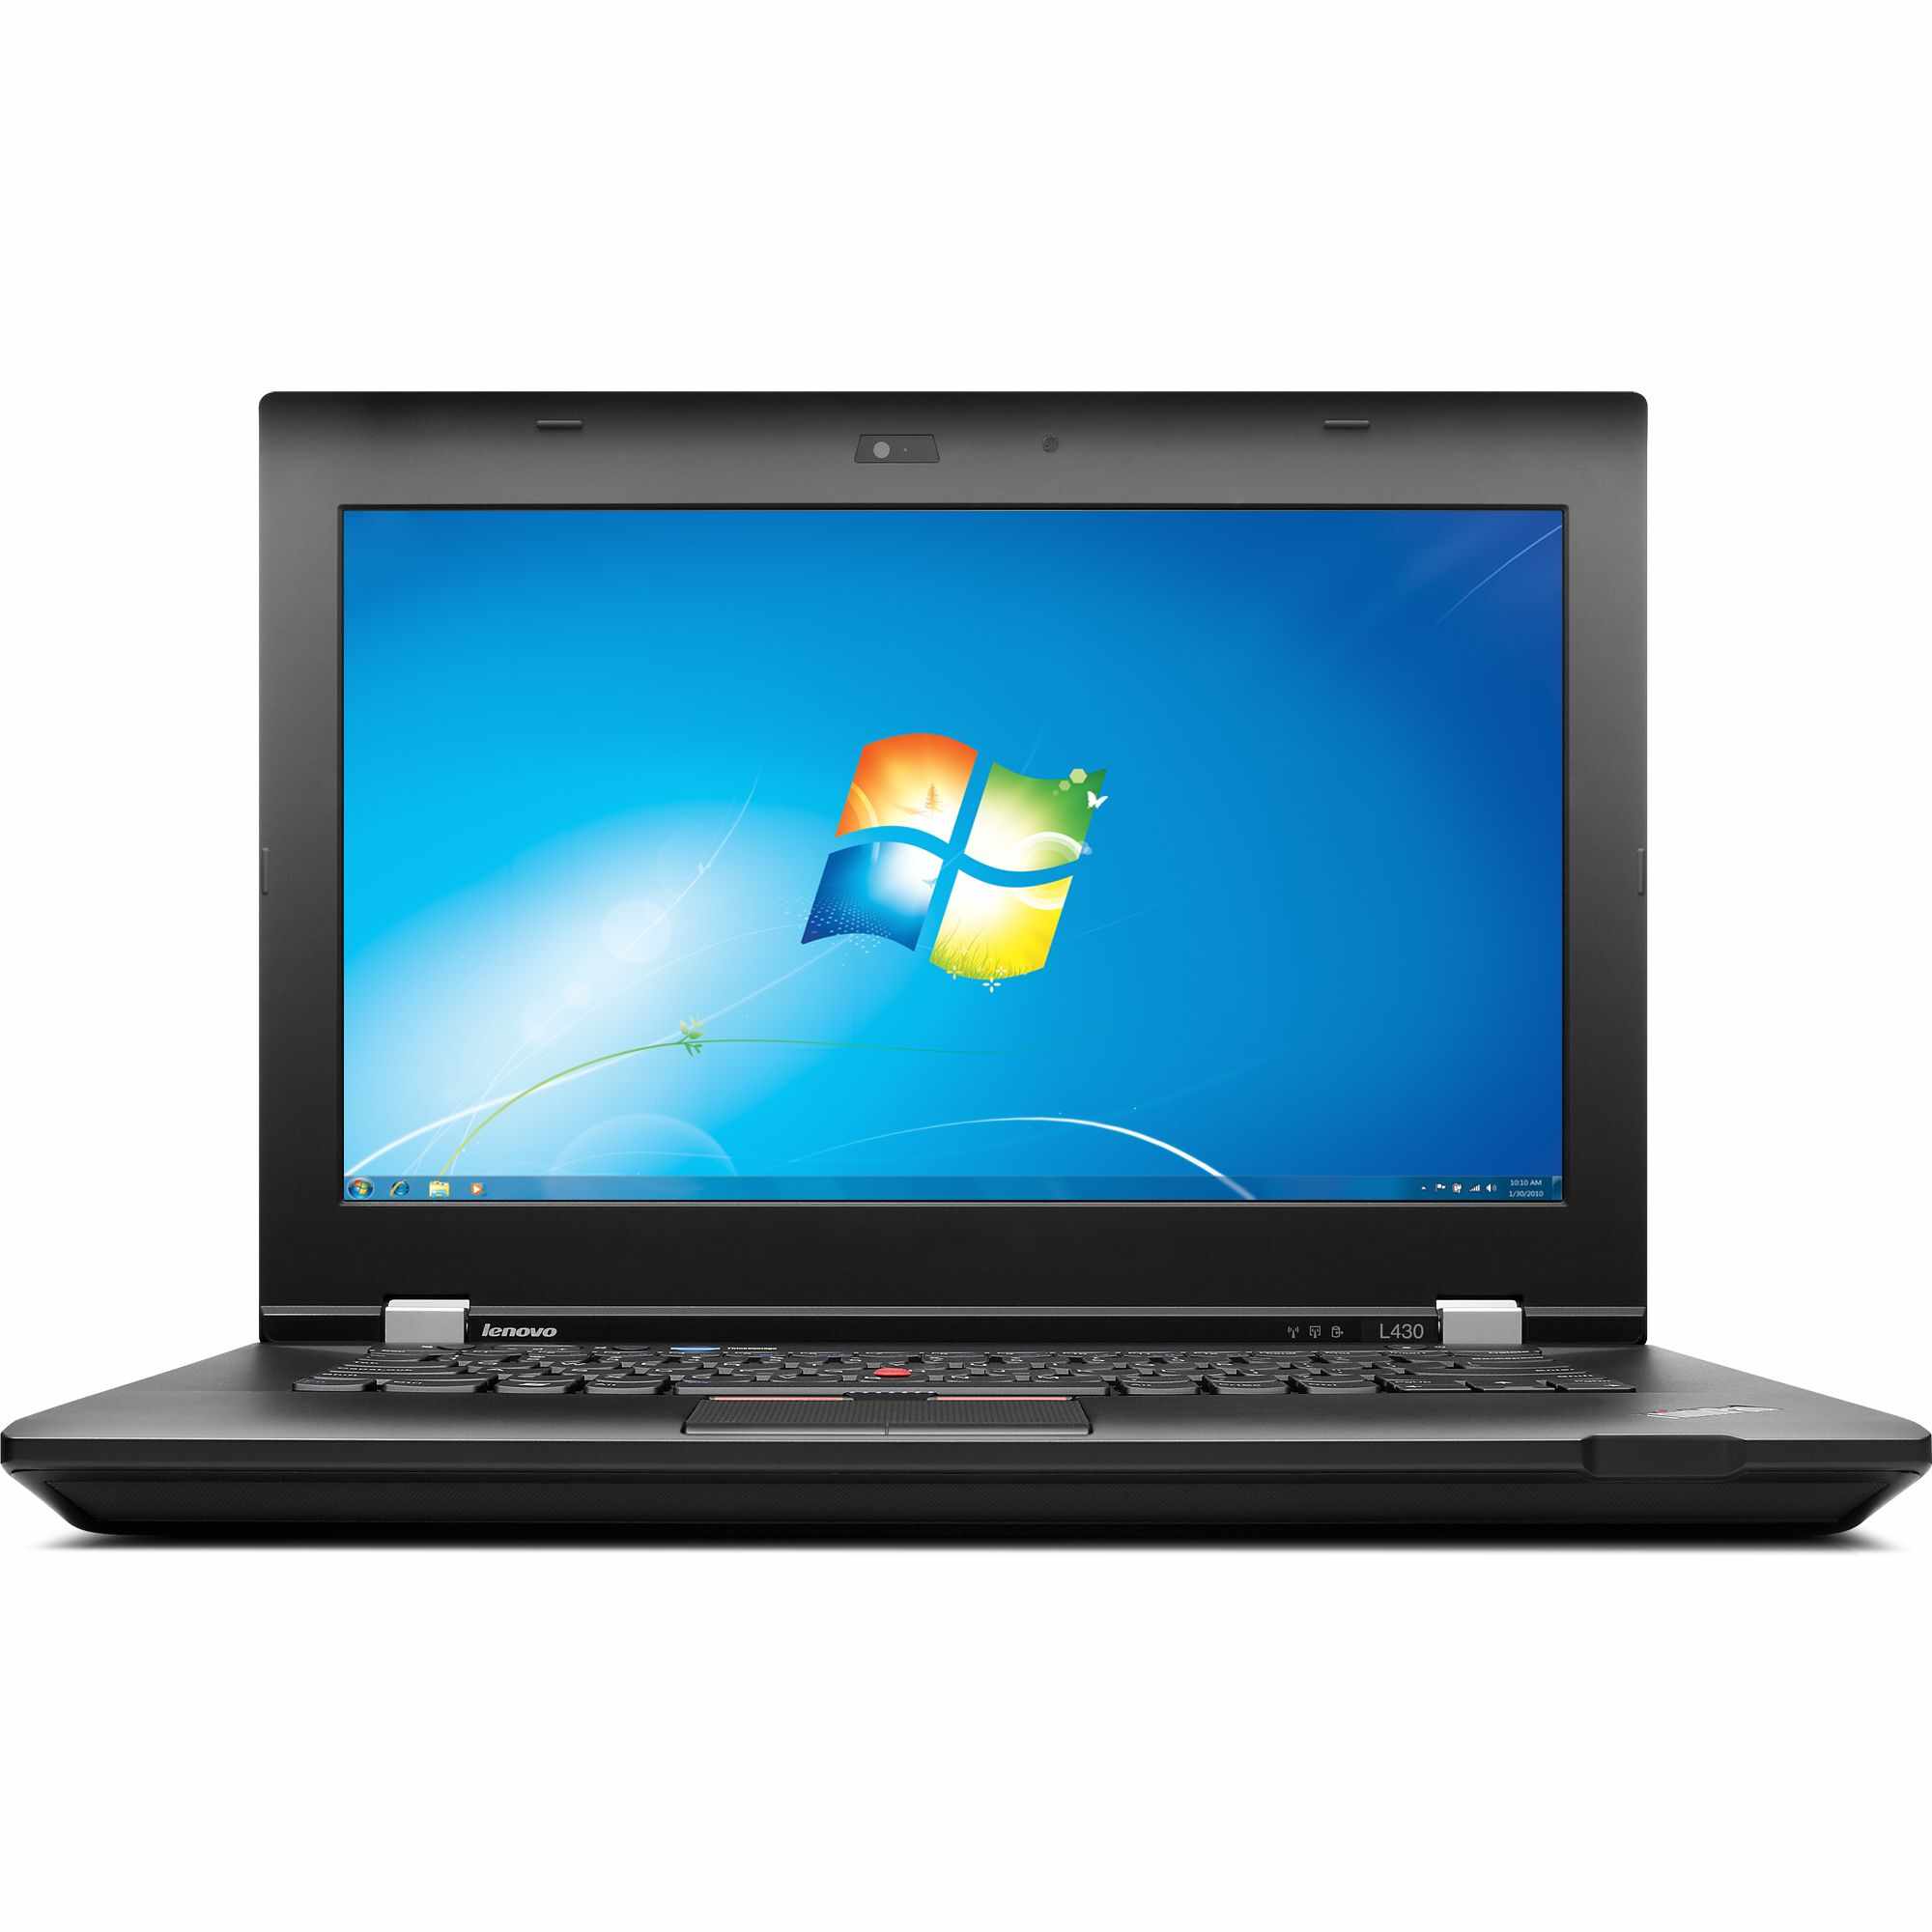 Laptop Lenovo ThinkPad L430, Intel Core i5-3320M 2.60GHz, 4GB DDR3, 120GB SSD, DVD-RW, 14 Inch, Webcam